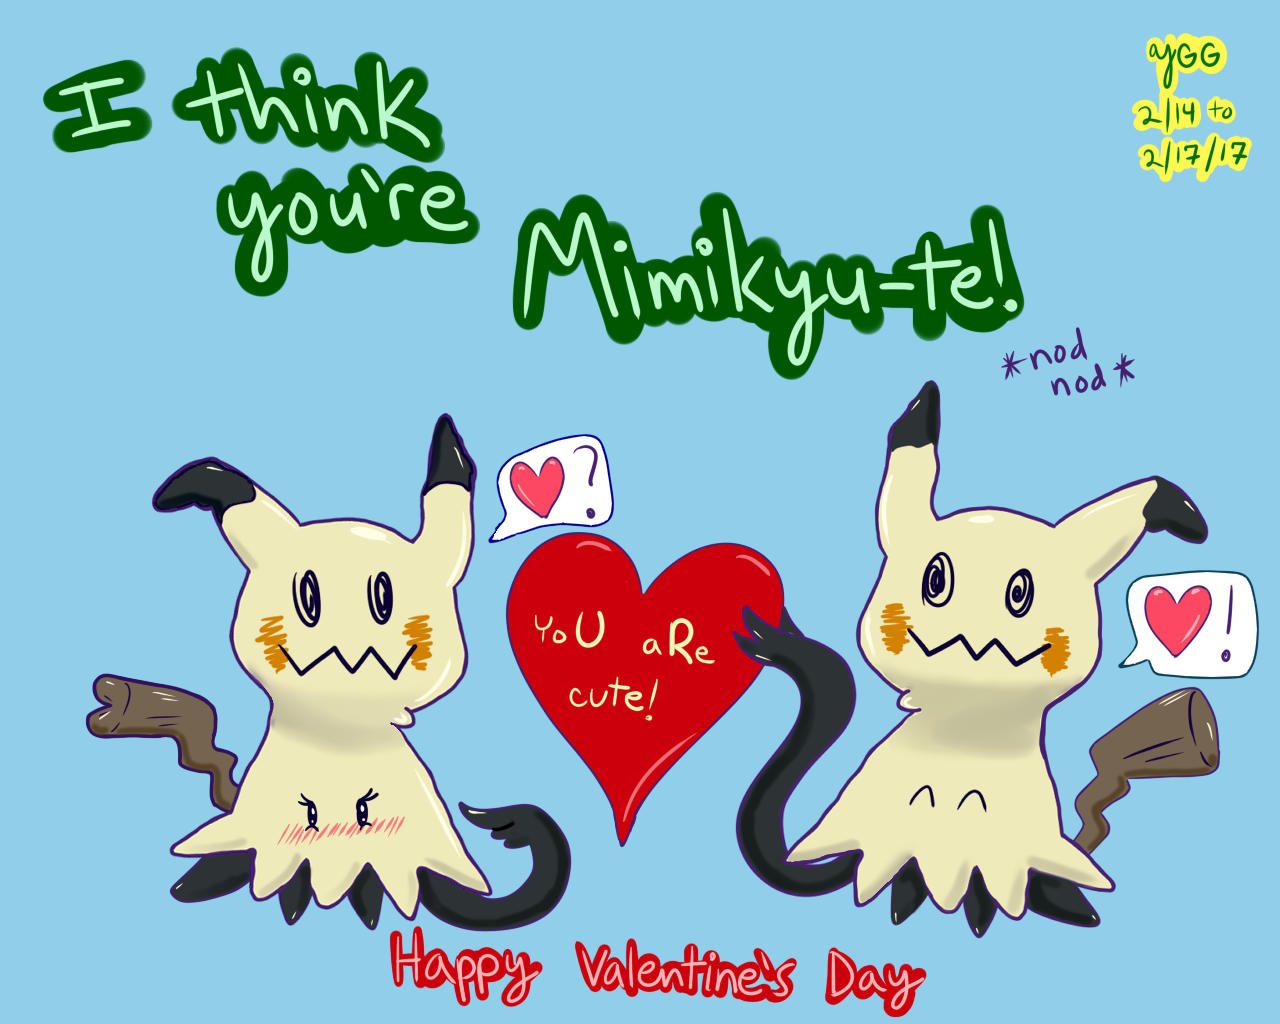 custom_pokemon_valentine__mimikyute_by_yoshigamergirl-dazdy1g.png